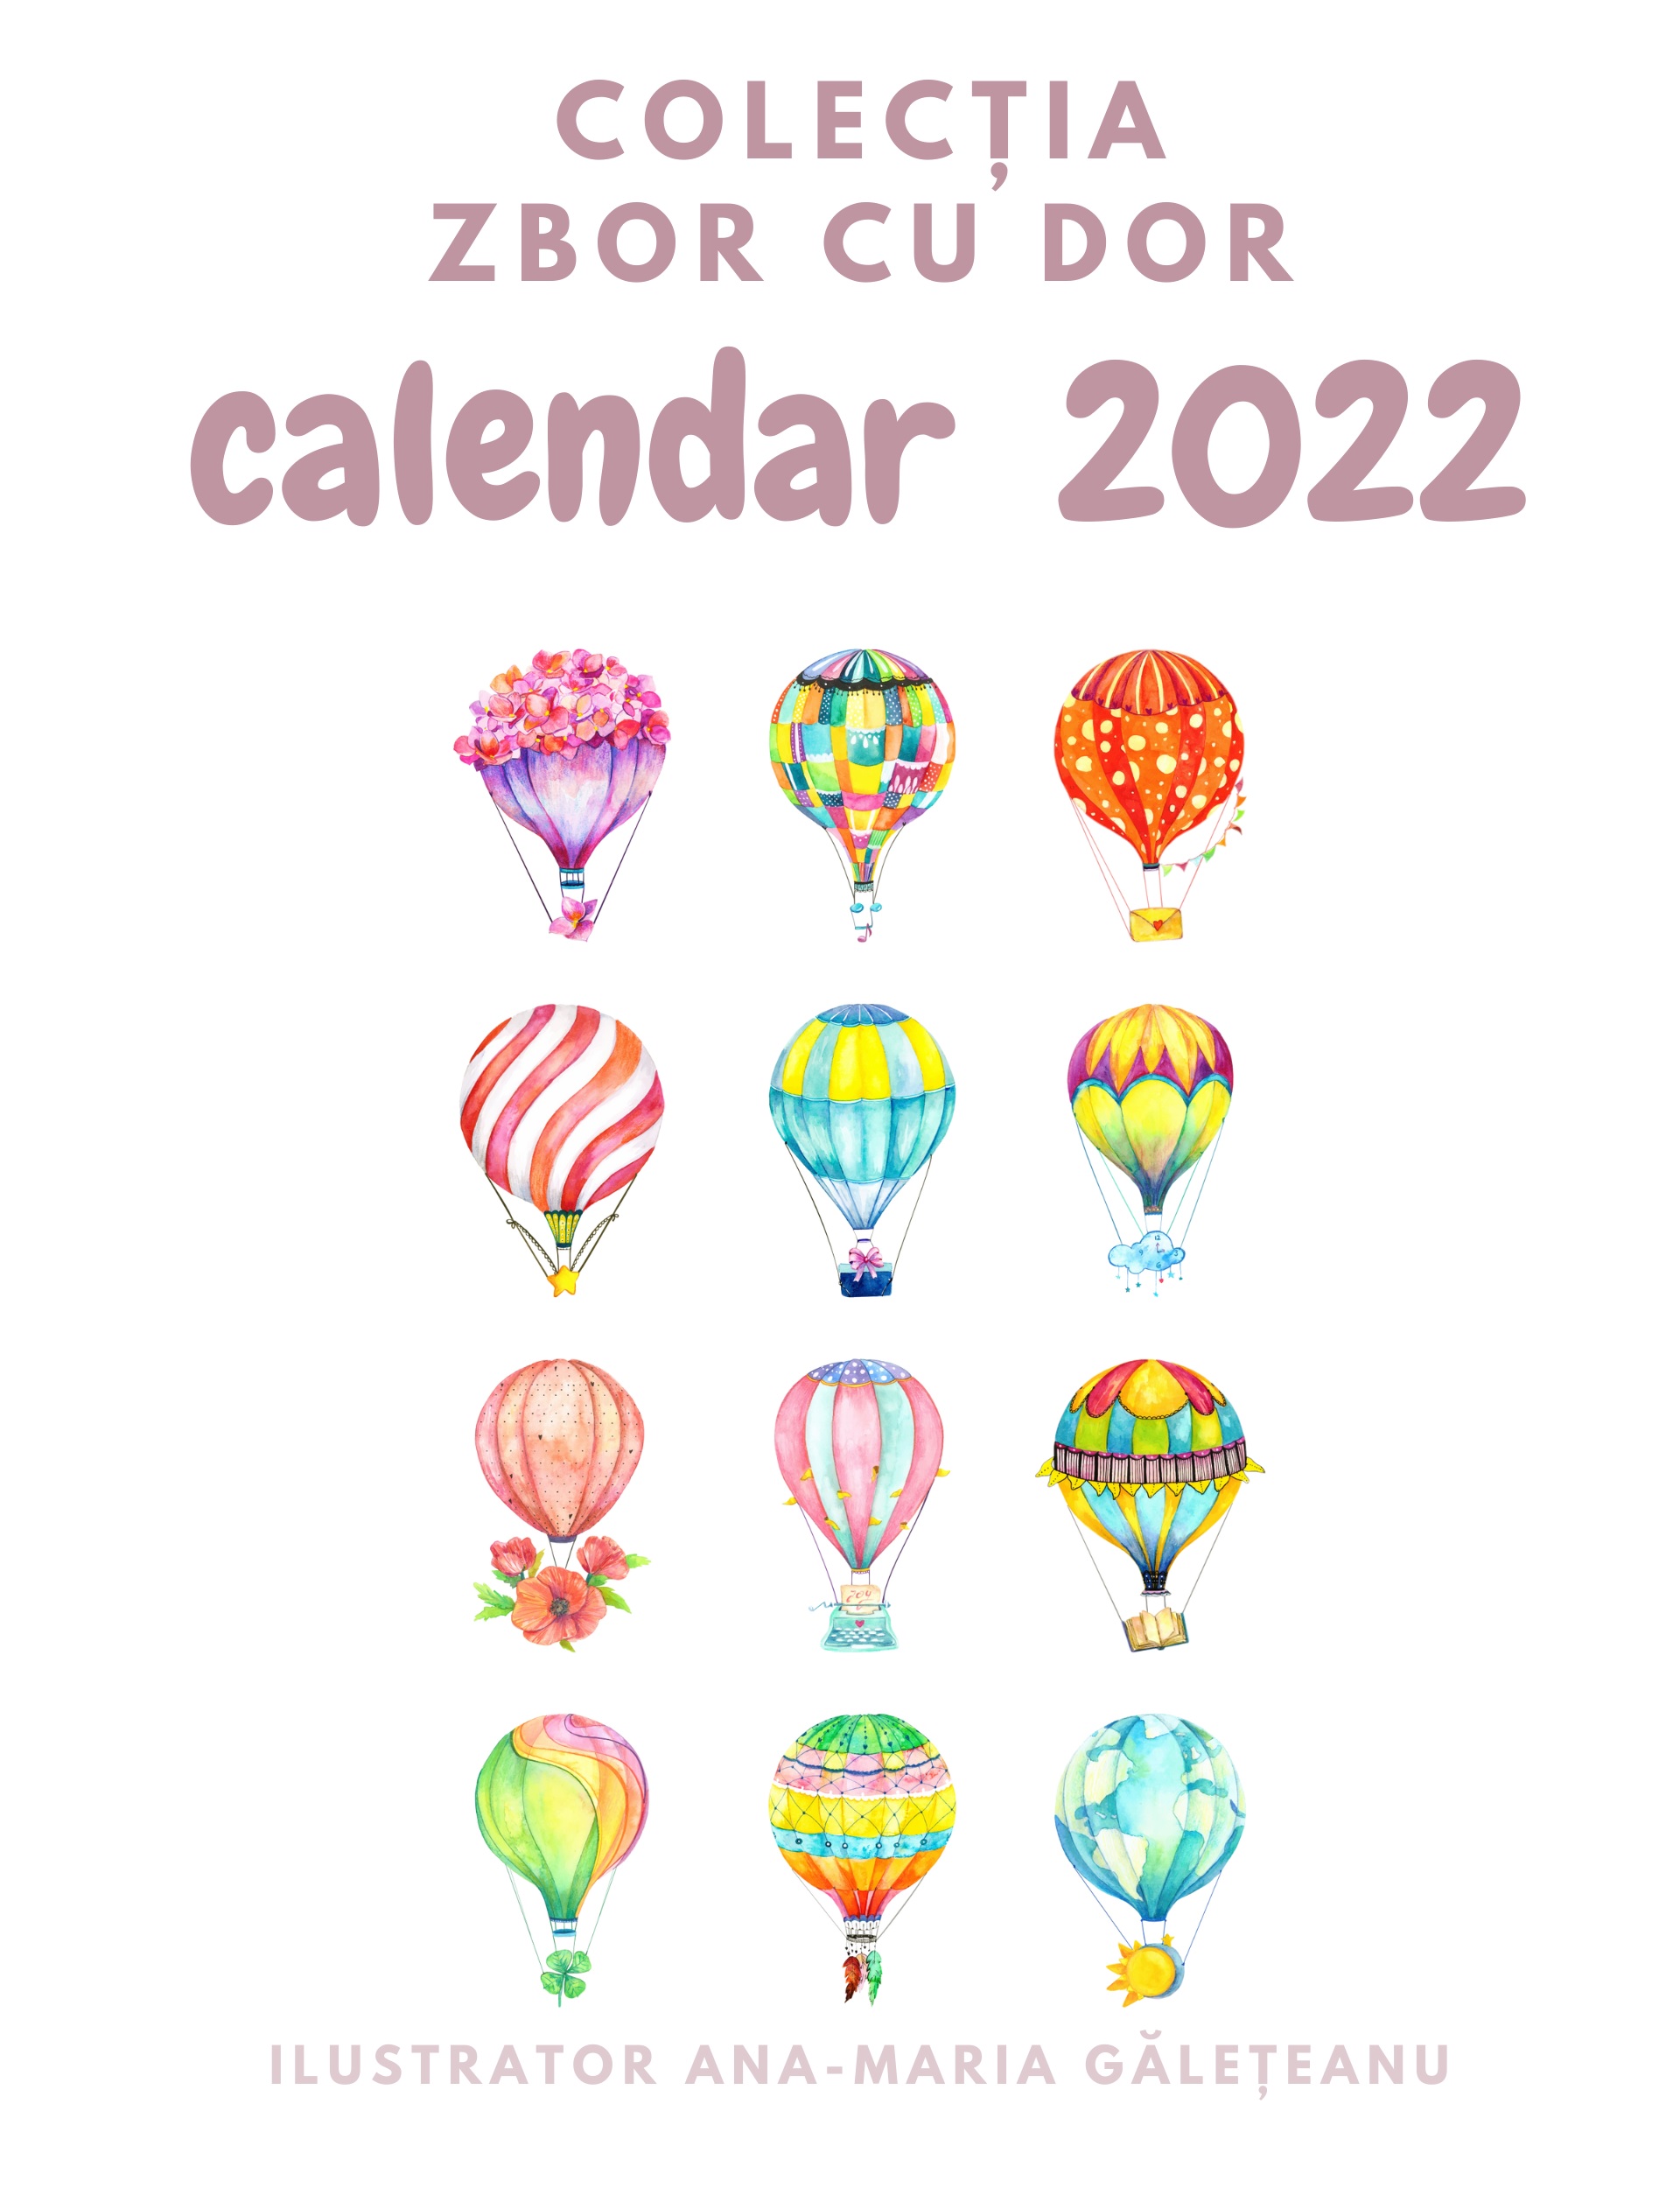 Calendar 2022 - Zbor cu Dor | Ana-Maria Galeteanu Ilustrator